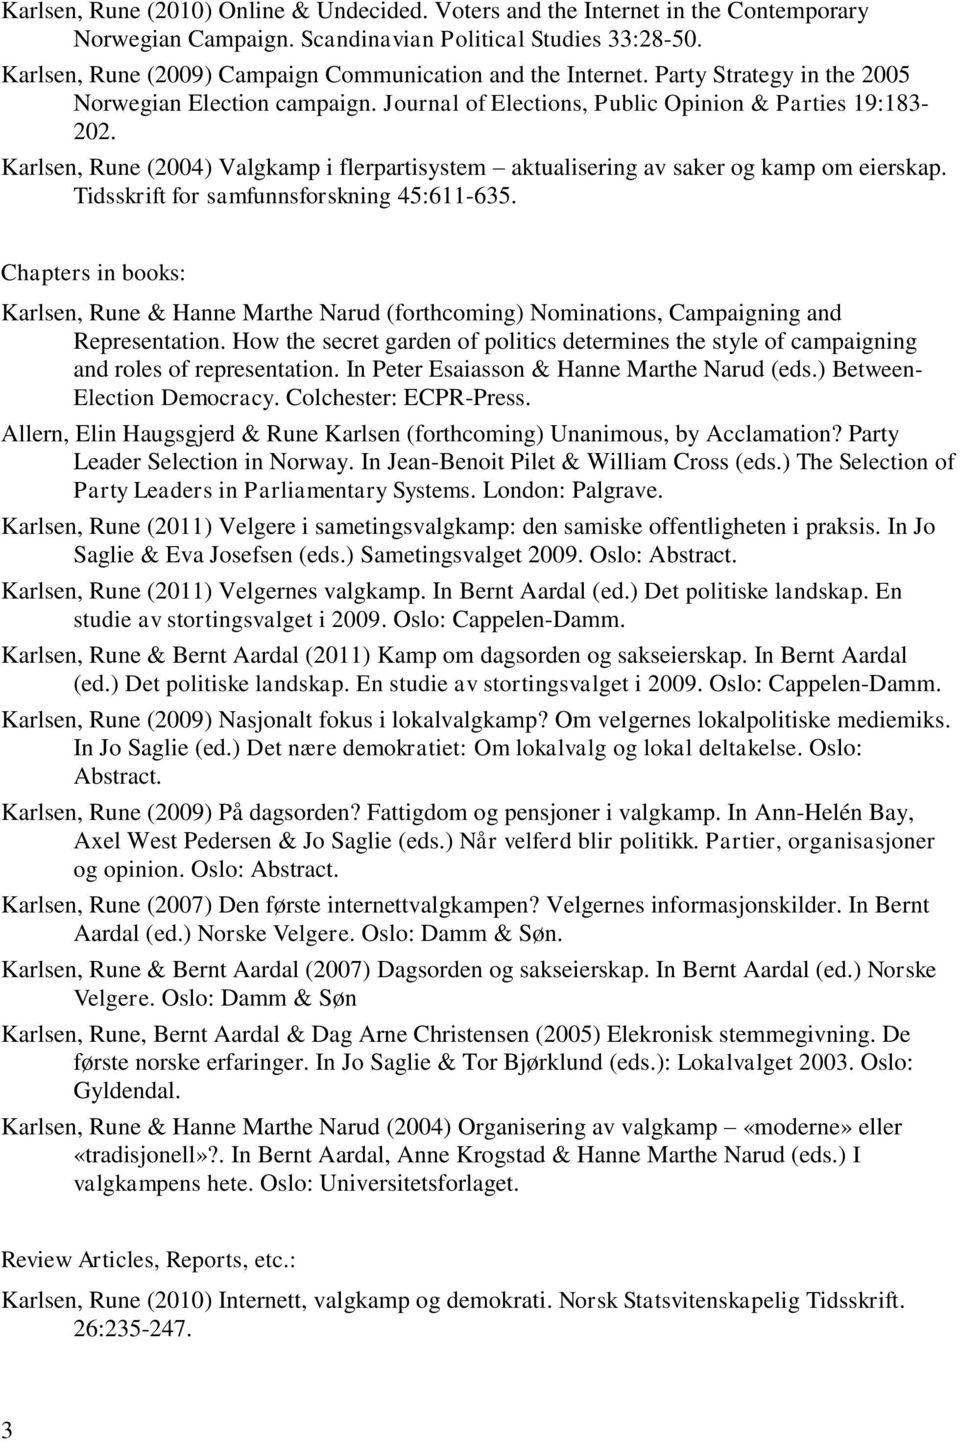 Karlsen, Rune (2004) Valgkamp i flerpartisystem aktualisering av saker og kamp om eierskap. Tidsskrift for samfunnsforskning 45:611-635.